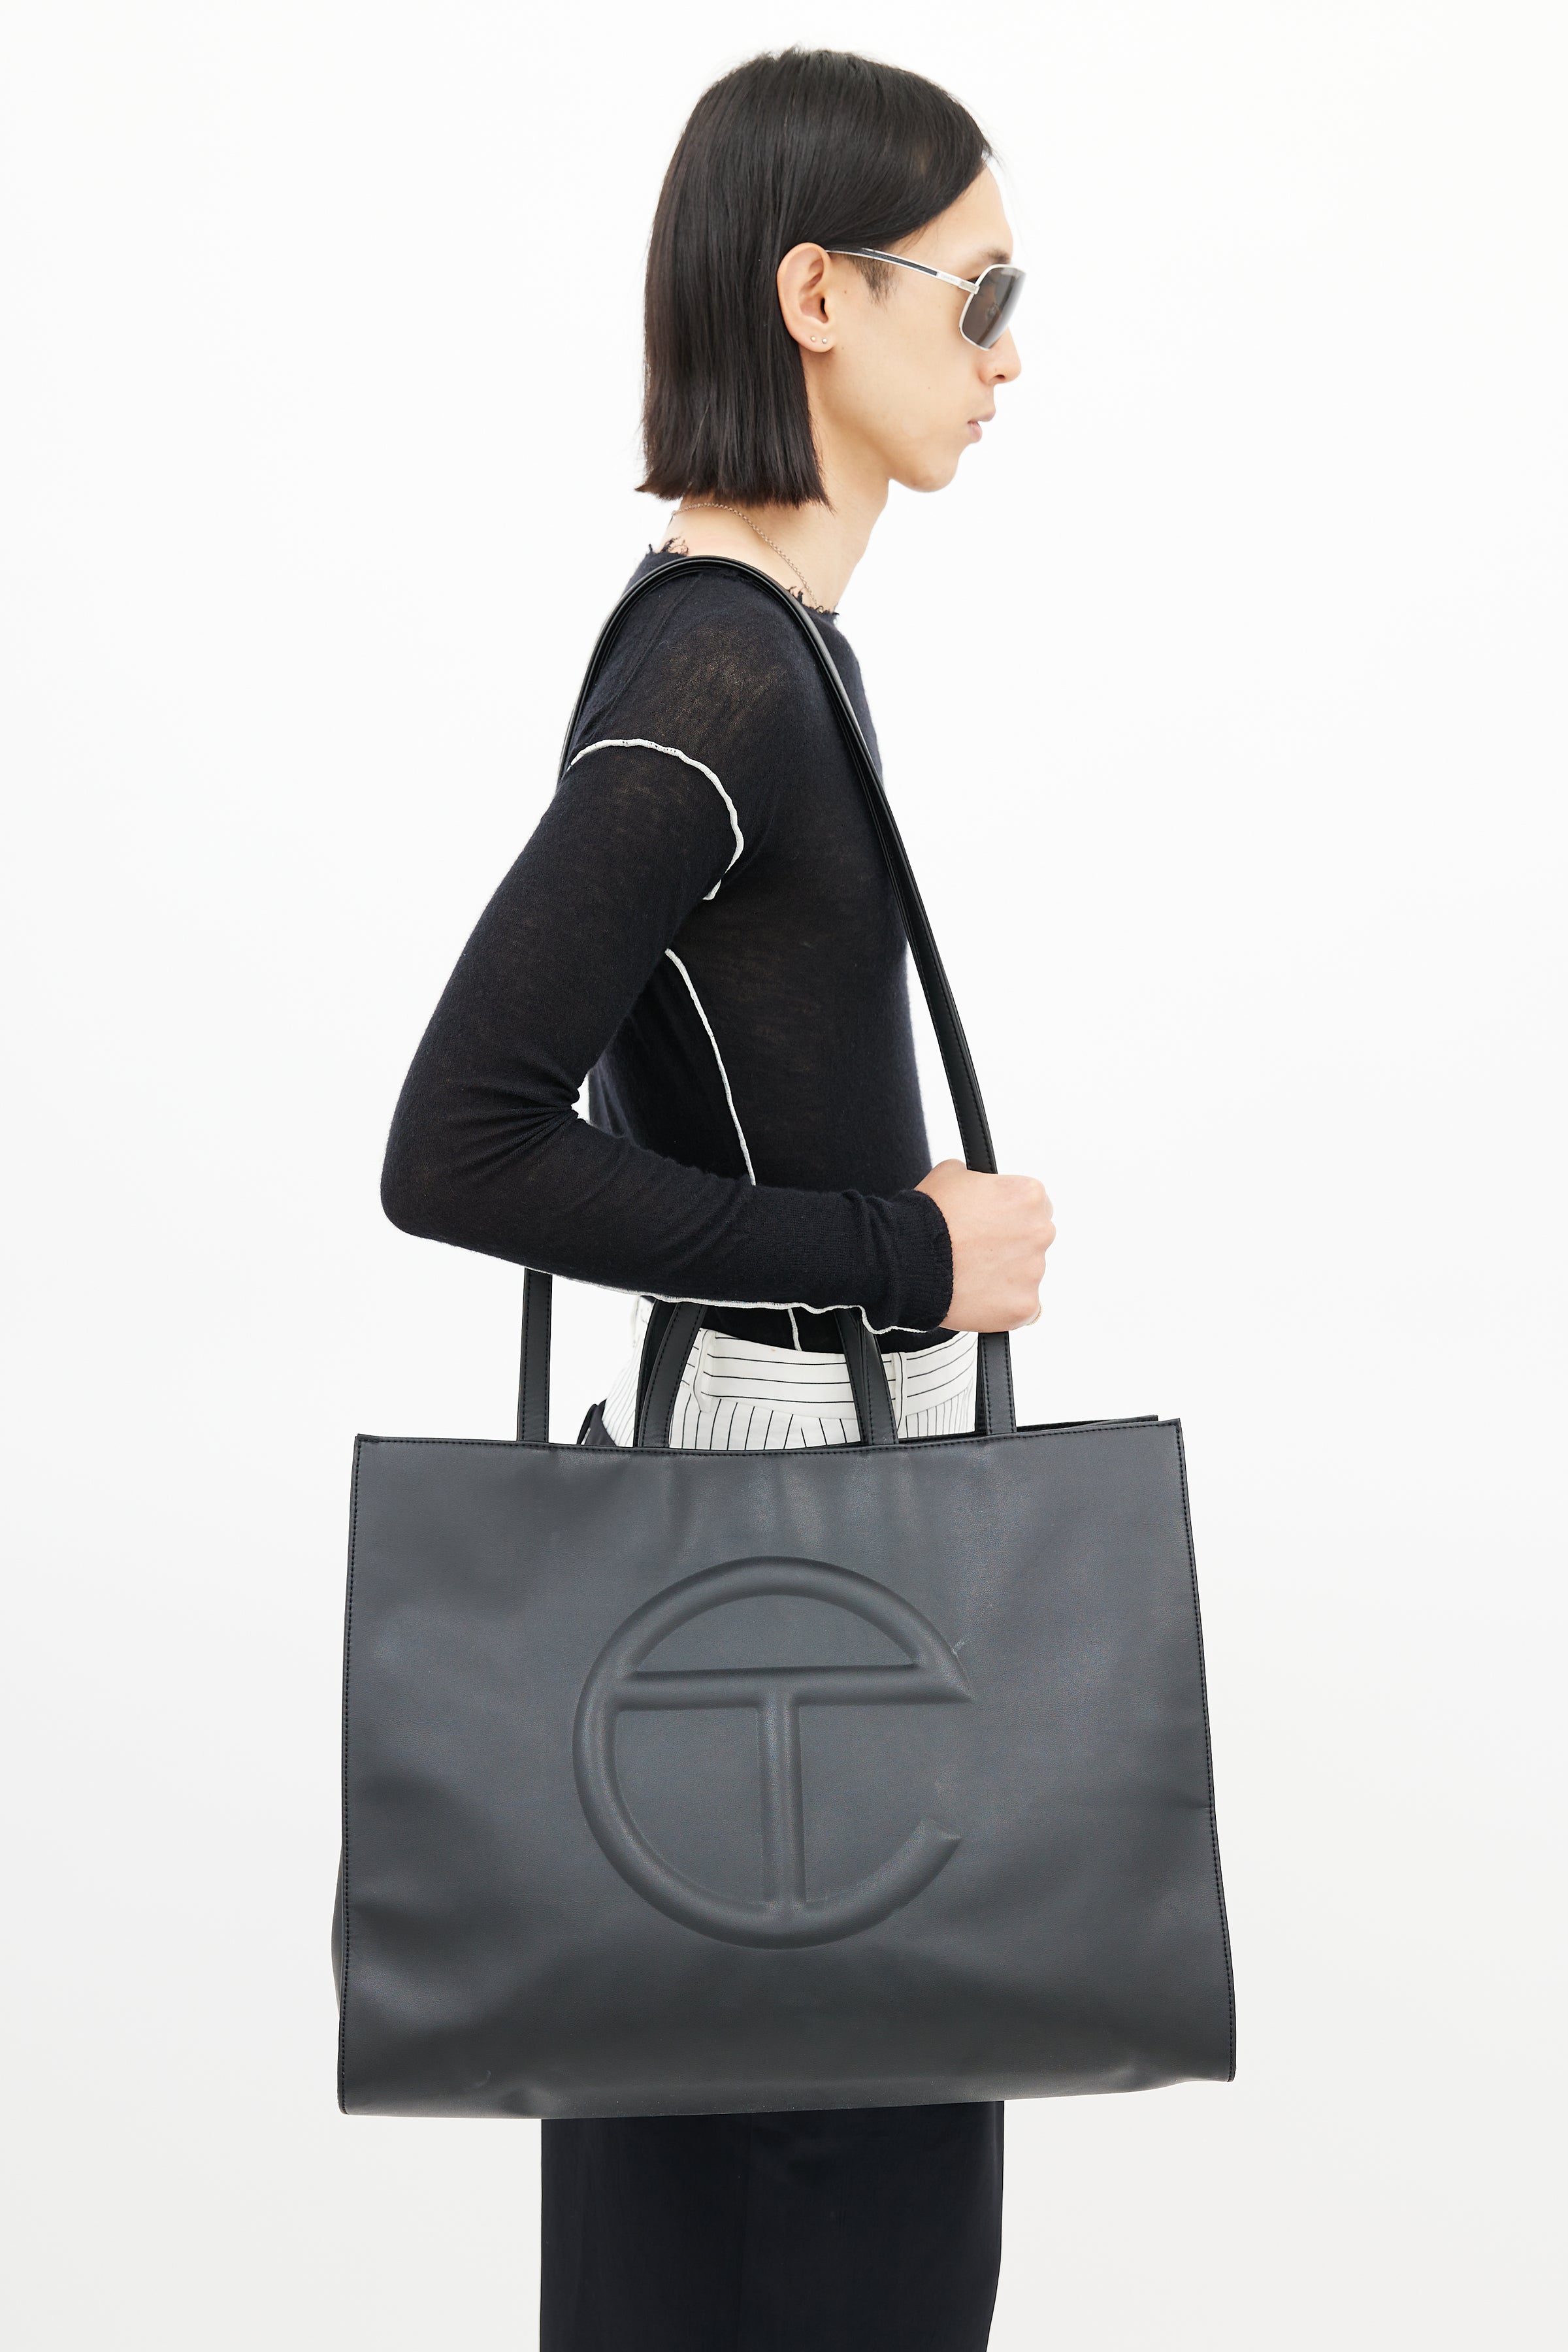 Telfar Black Large Shopping Bag Telfar